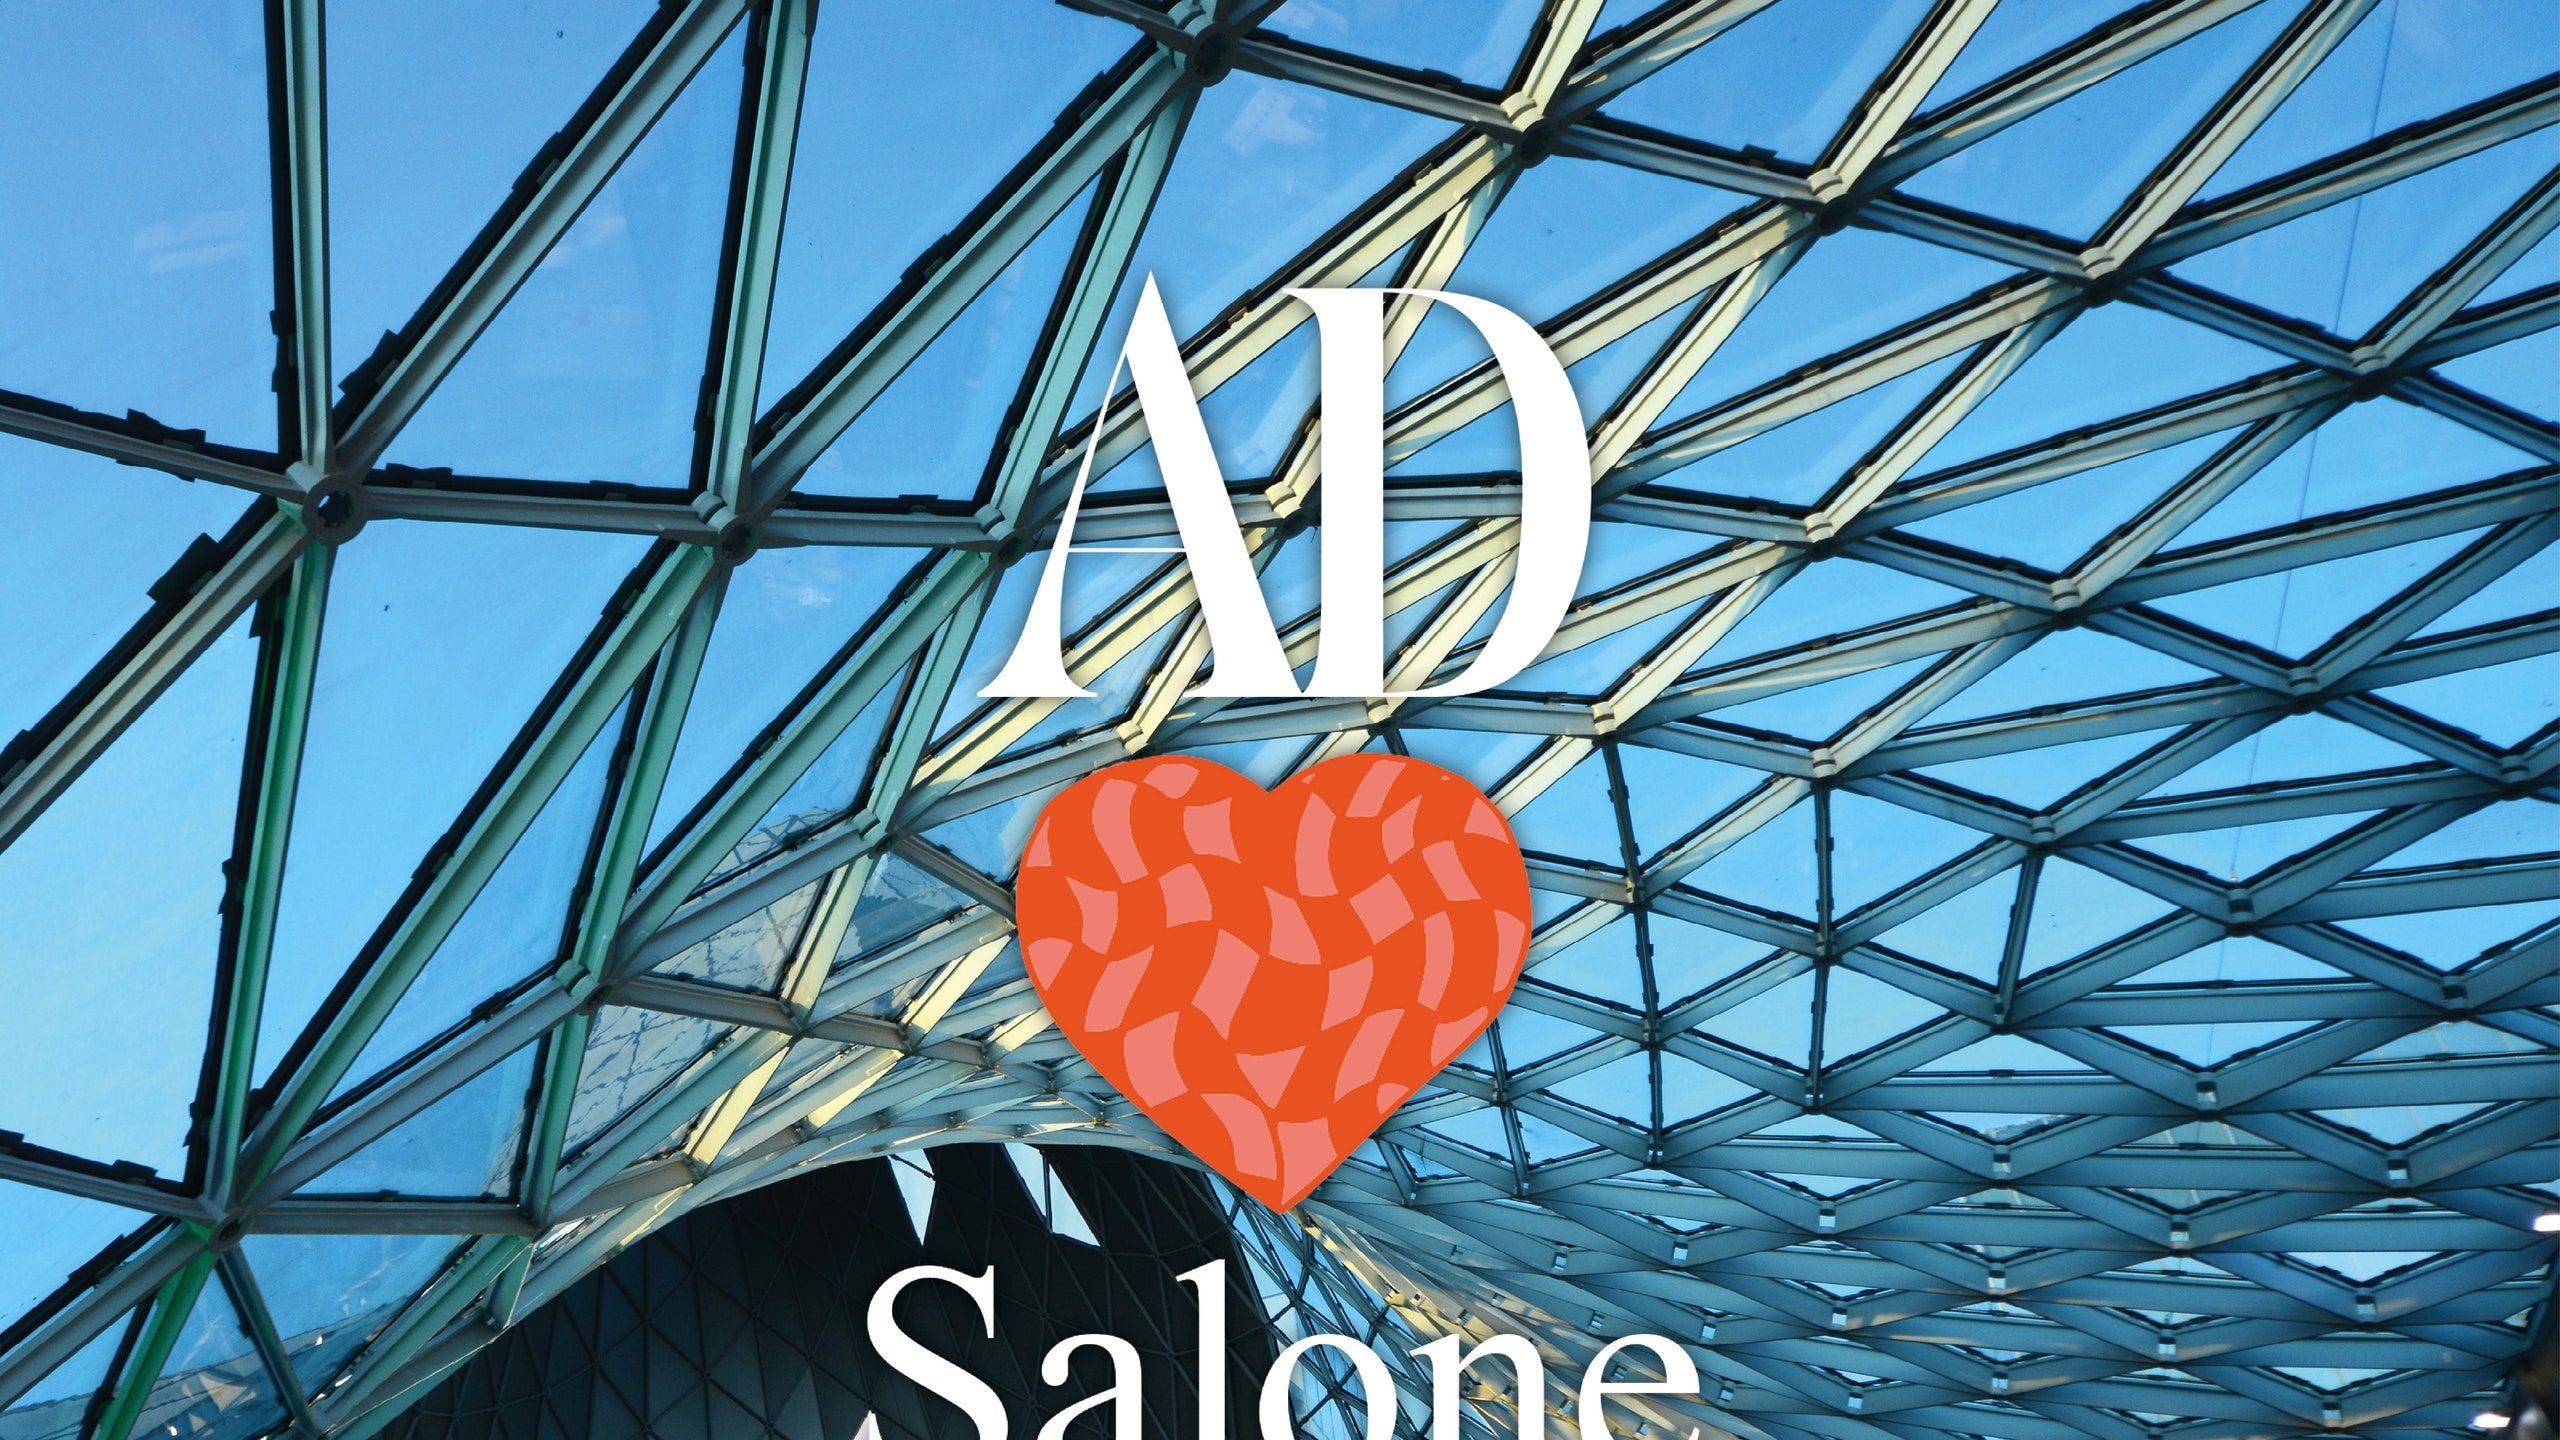 ADLovesSalone 10 изданий AD по всему миру поддерживают главную международную выставку дизайна